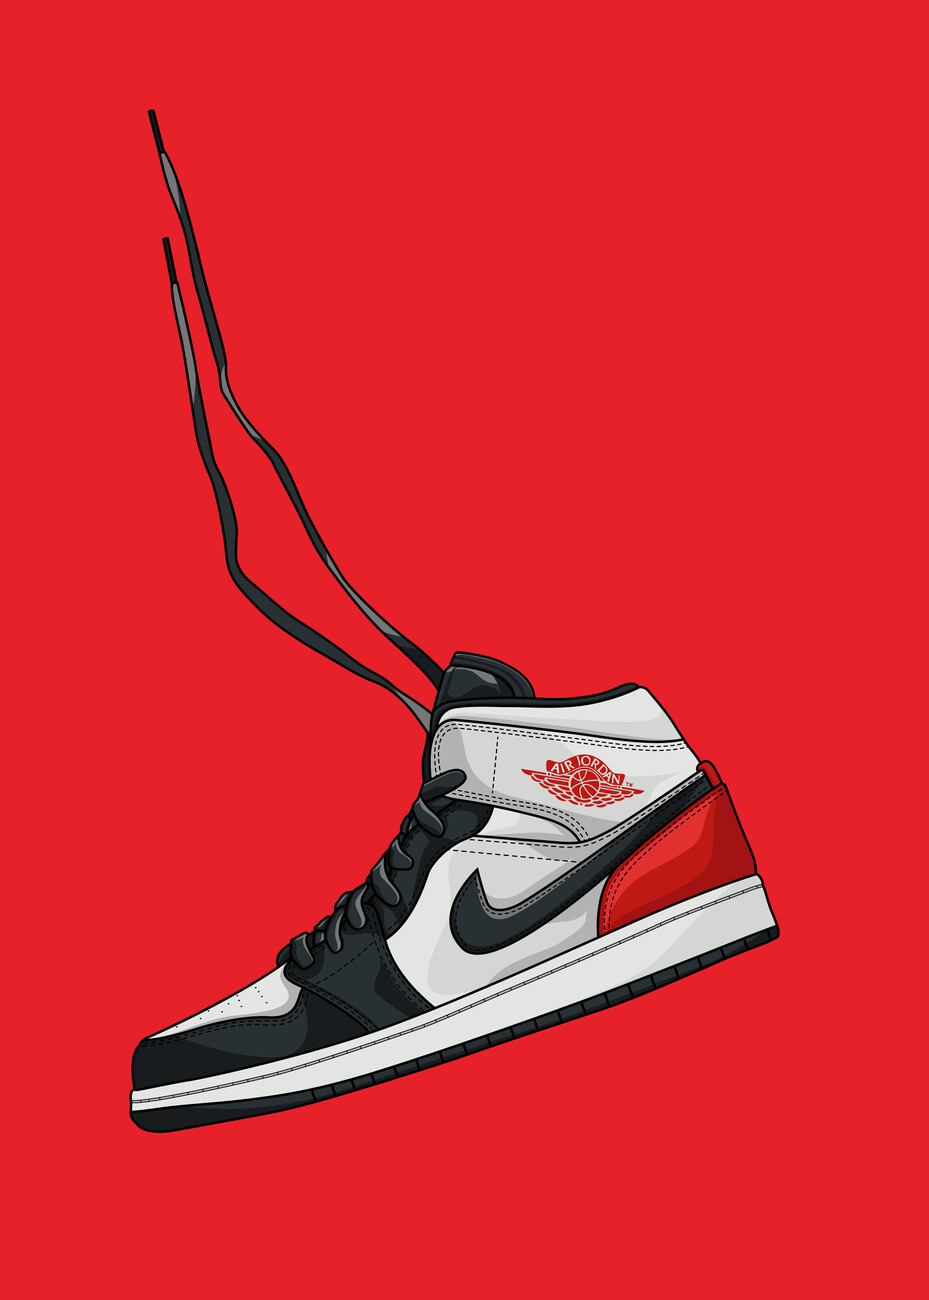 Sneaker Head - Sneakerhead - Posters and Art Prints | TeePublic